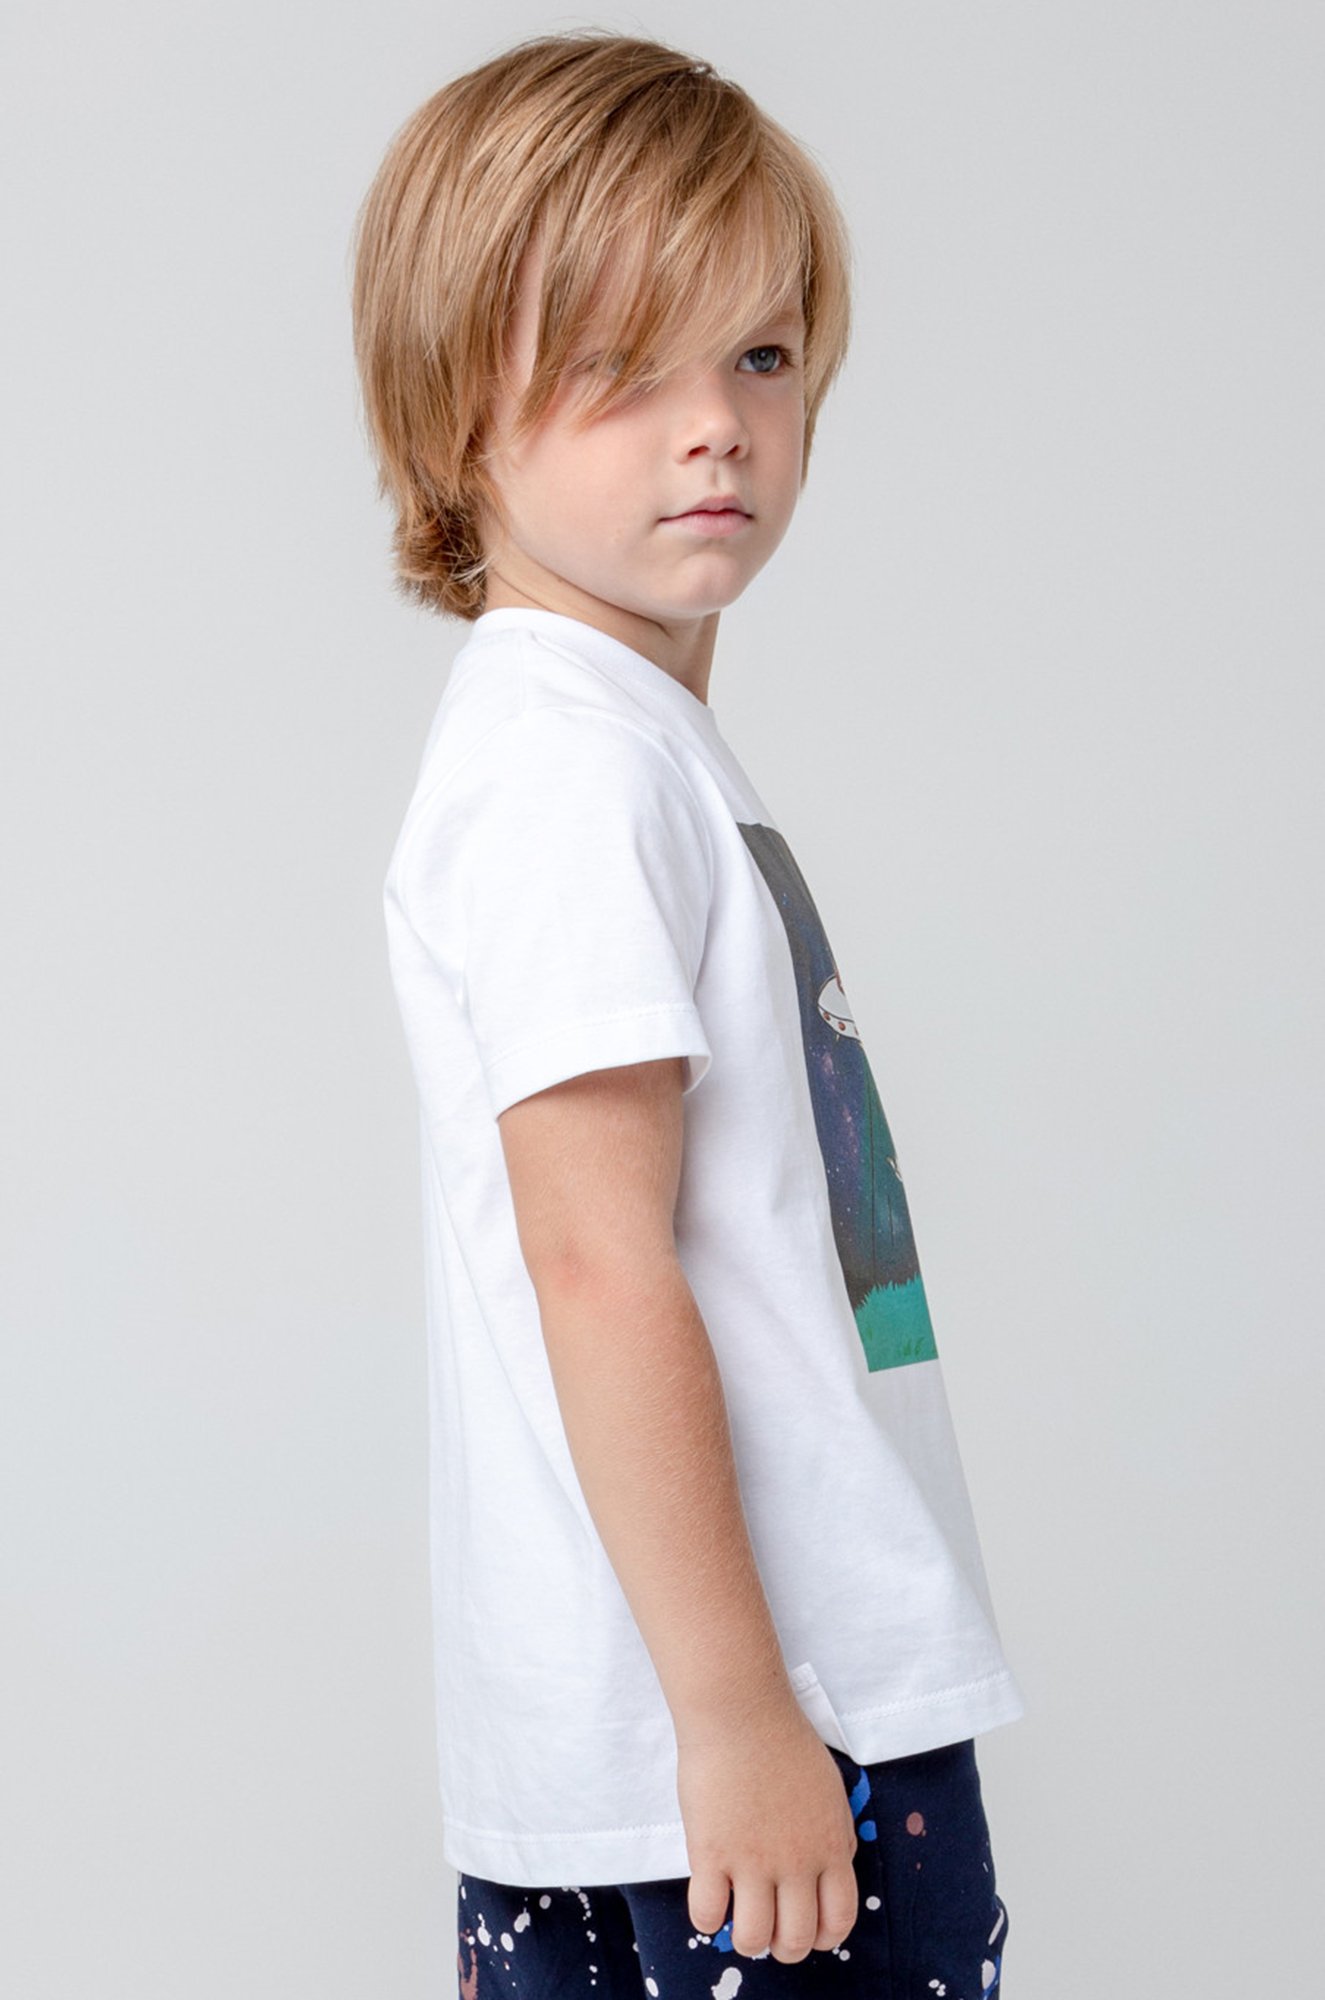 Хлопковая футболка для мальчика Crockid